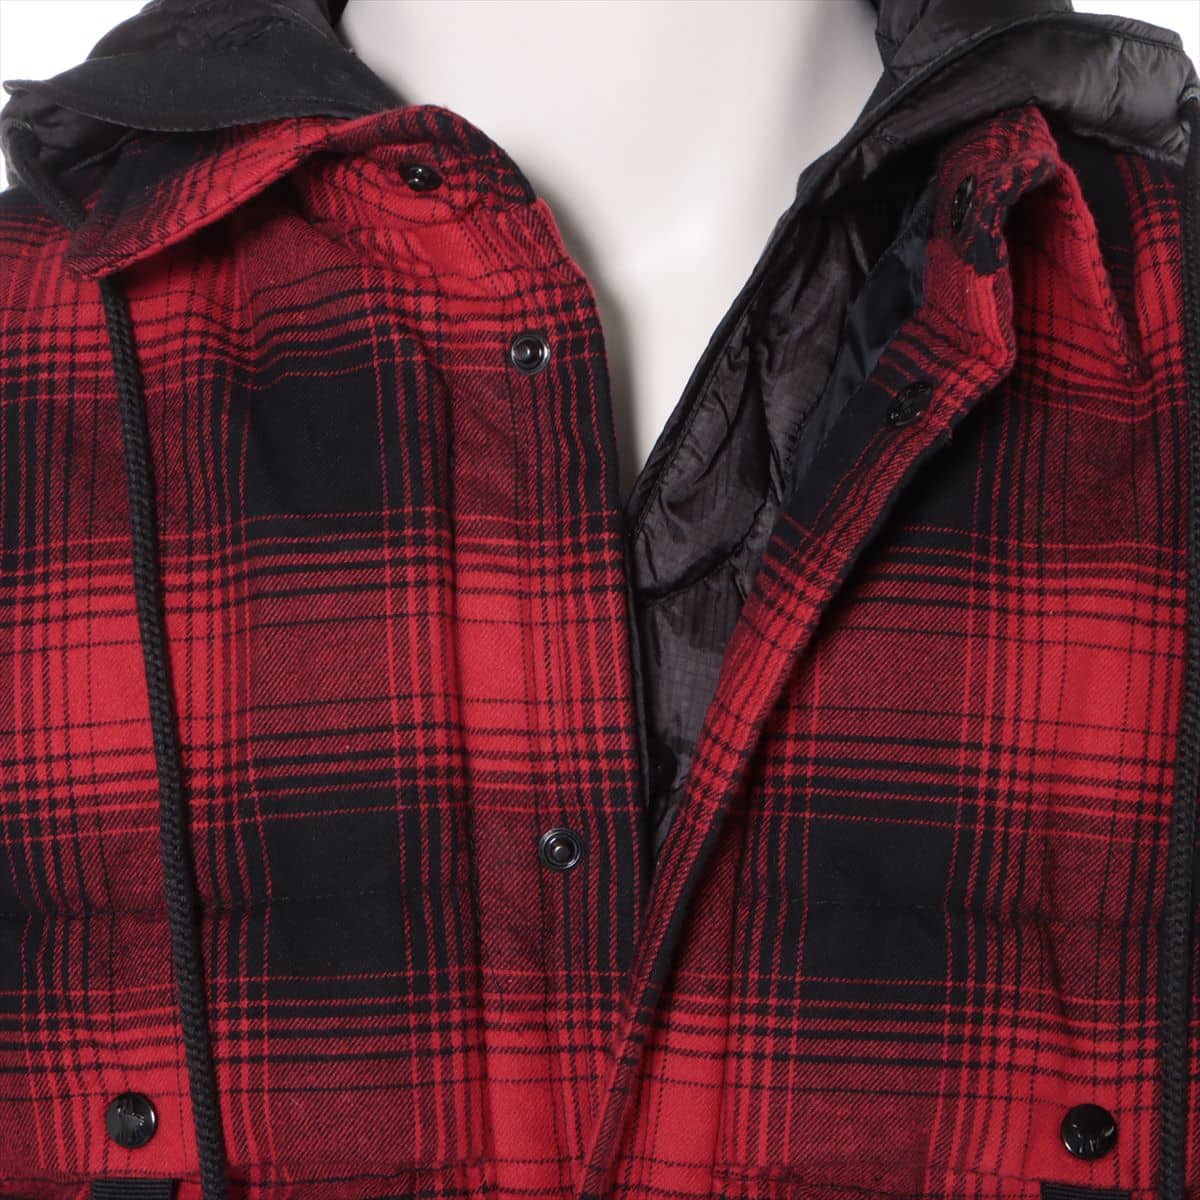 Moncler Genius Fragment DANVER 20 years Cotton & nylon Down jacket 1 Men's Red  Hiroshi Fujiwara Removable hood